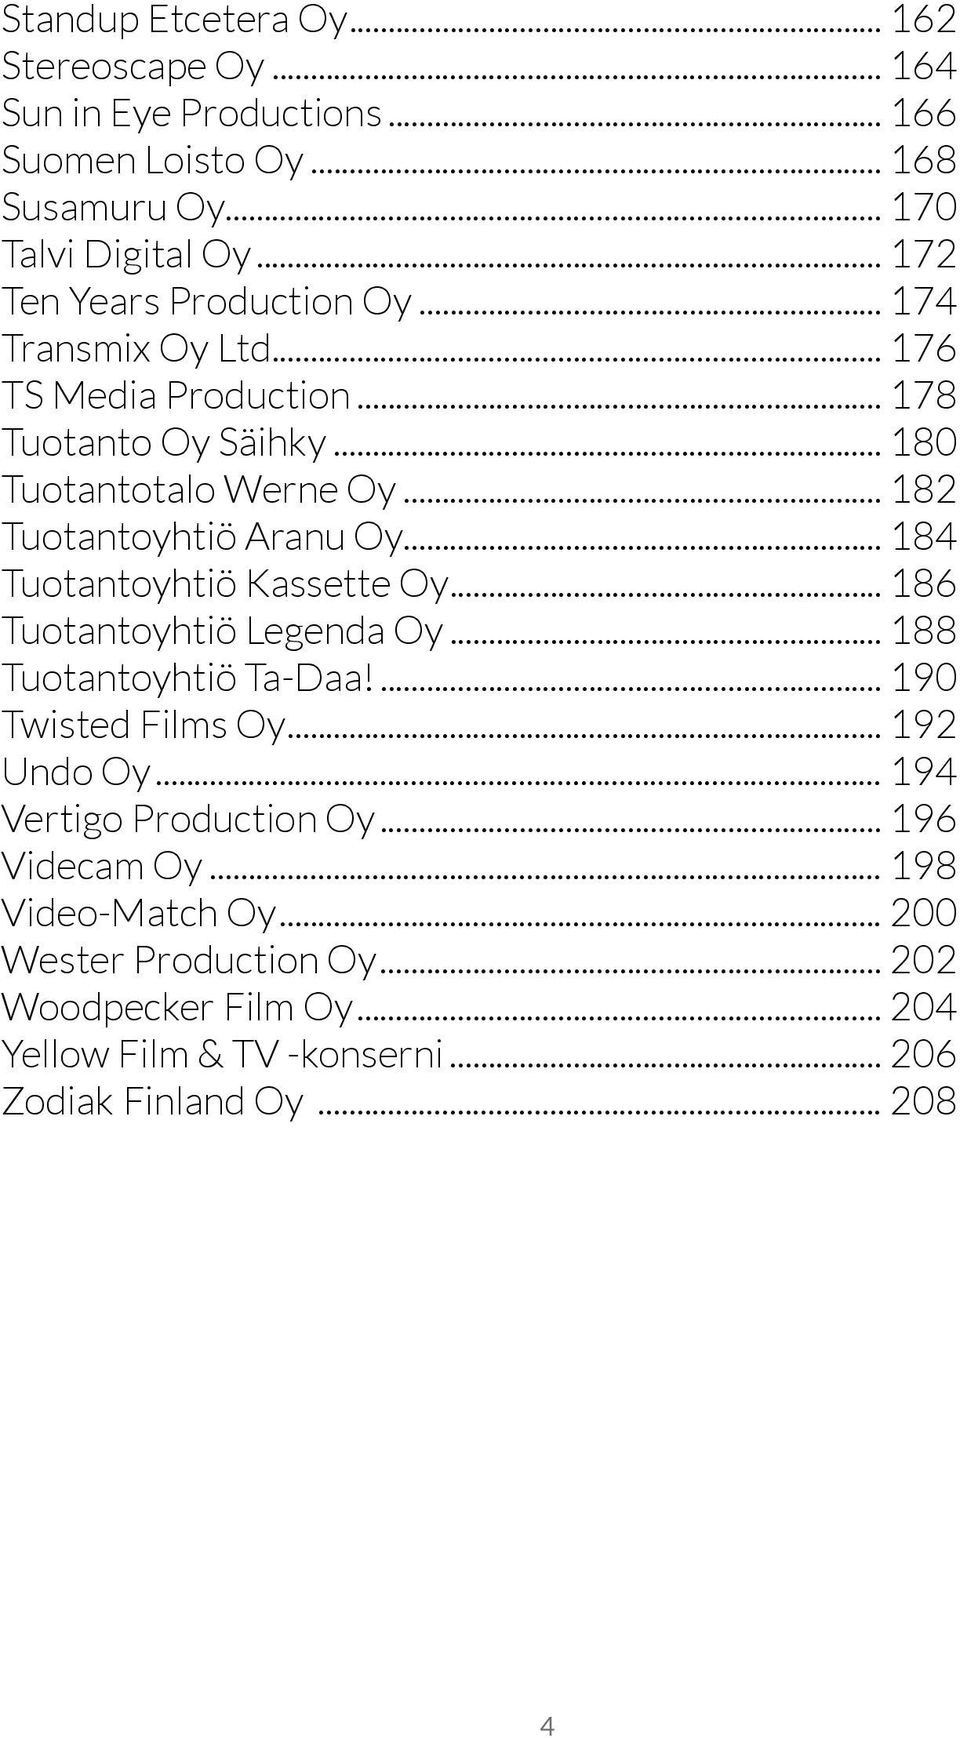 .. 182 Tuotantoyhtiö Aranu Oy... 184 Tuotantoyhtiö Kassette Oy... 186 Tuotantoyhtiö Legenda Oy... 188 Tuotantoyhtiö Ta-Daa!... 190 Twisted Films Oy.